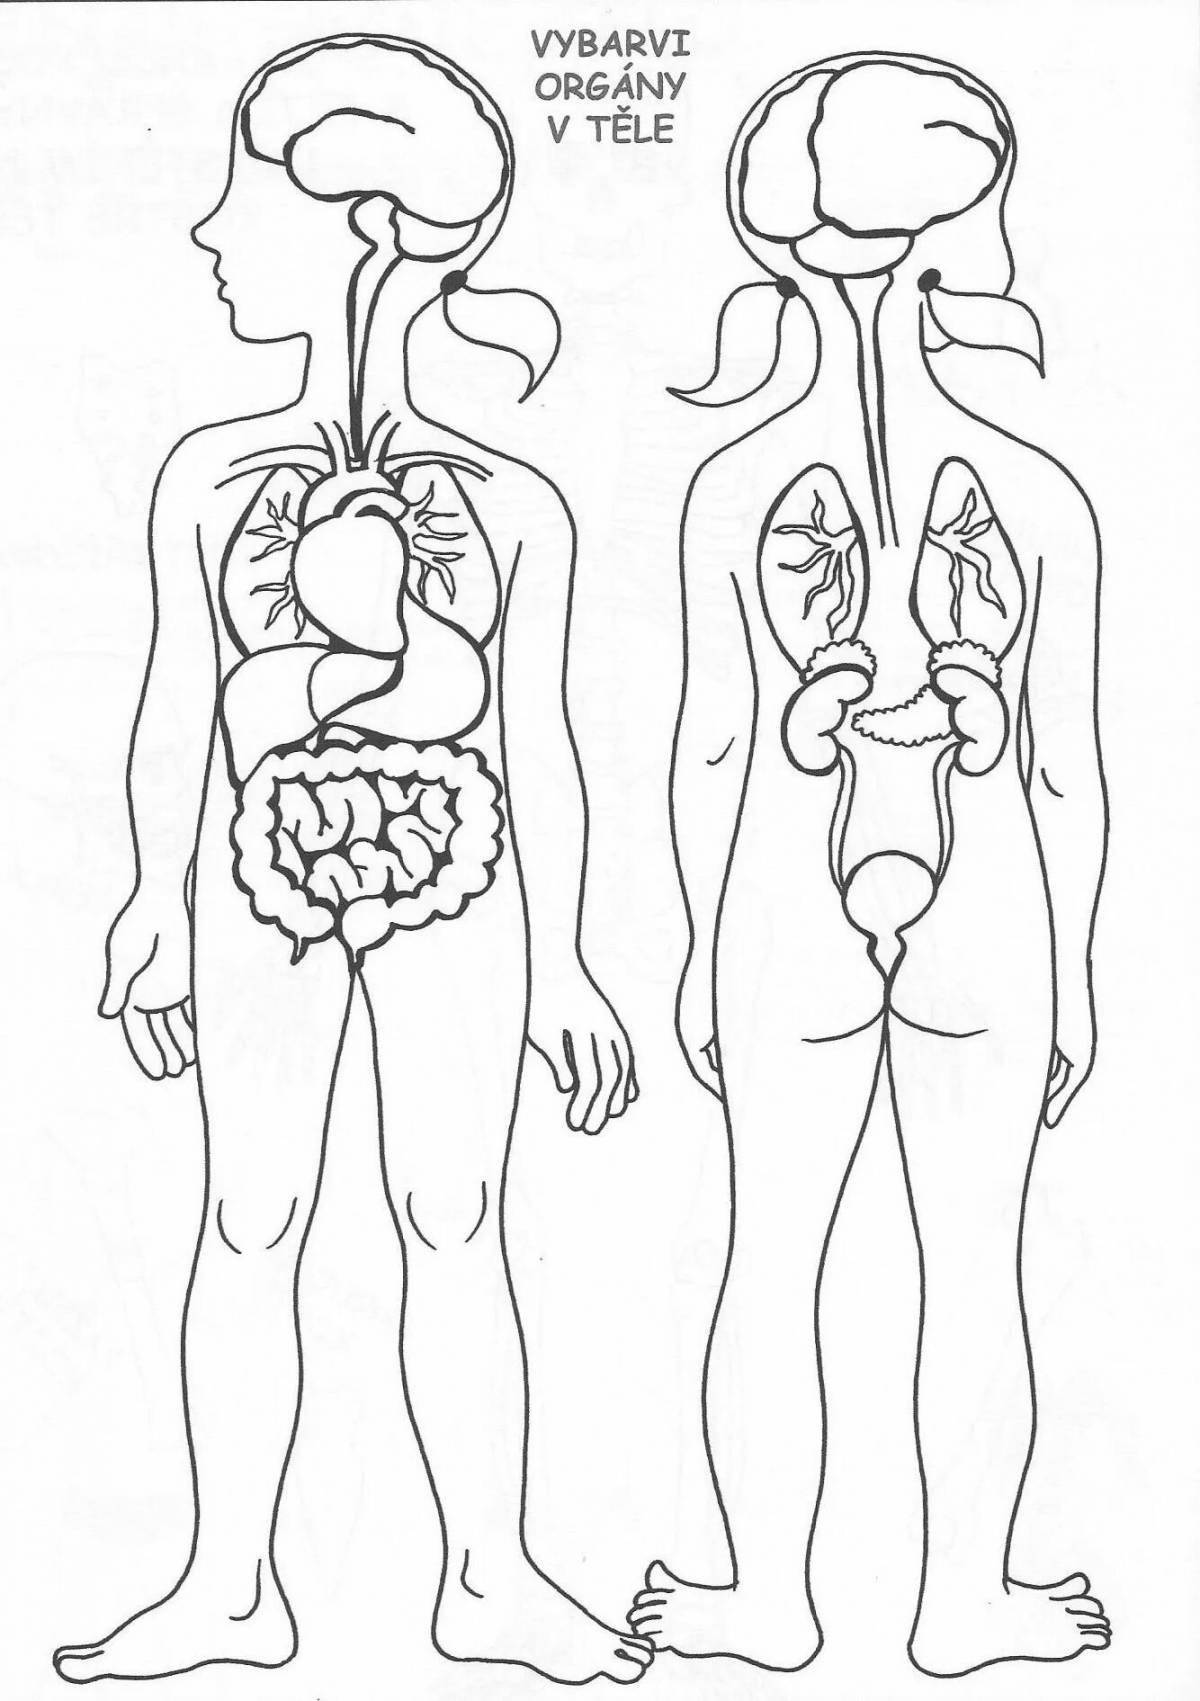 Цветная раскраска человеческое тело с внутренними органами